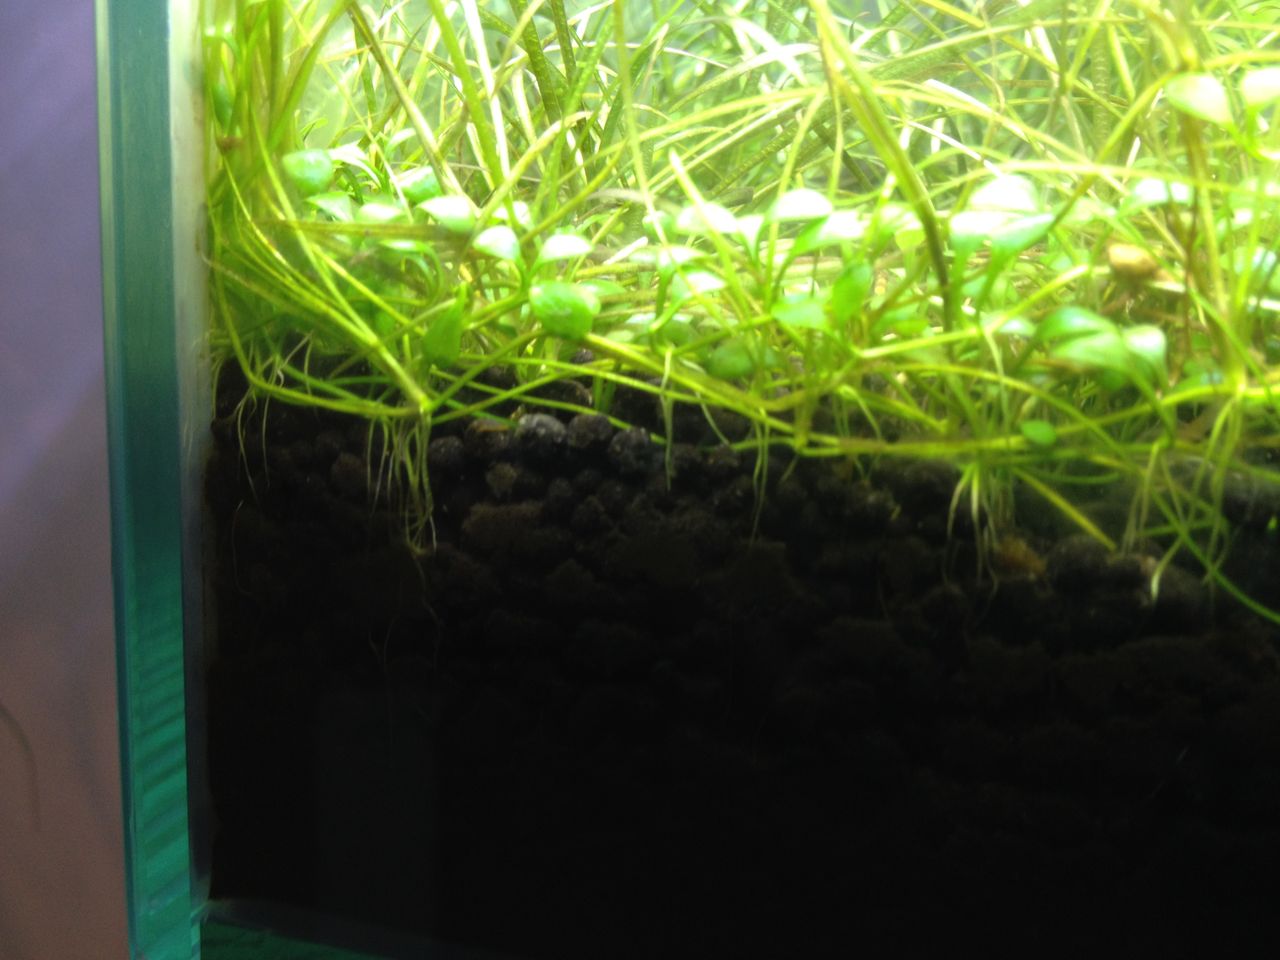 アオコとの決別・水槽用除藻剤ニューモンテを試してみる : 水槽にやったことを忘れないように書いておくブログ